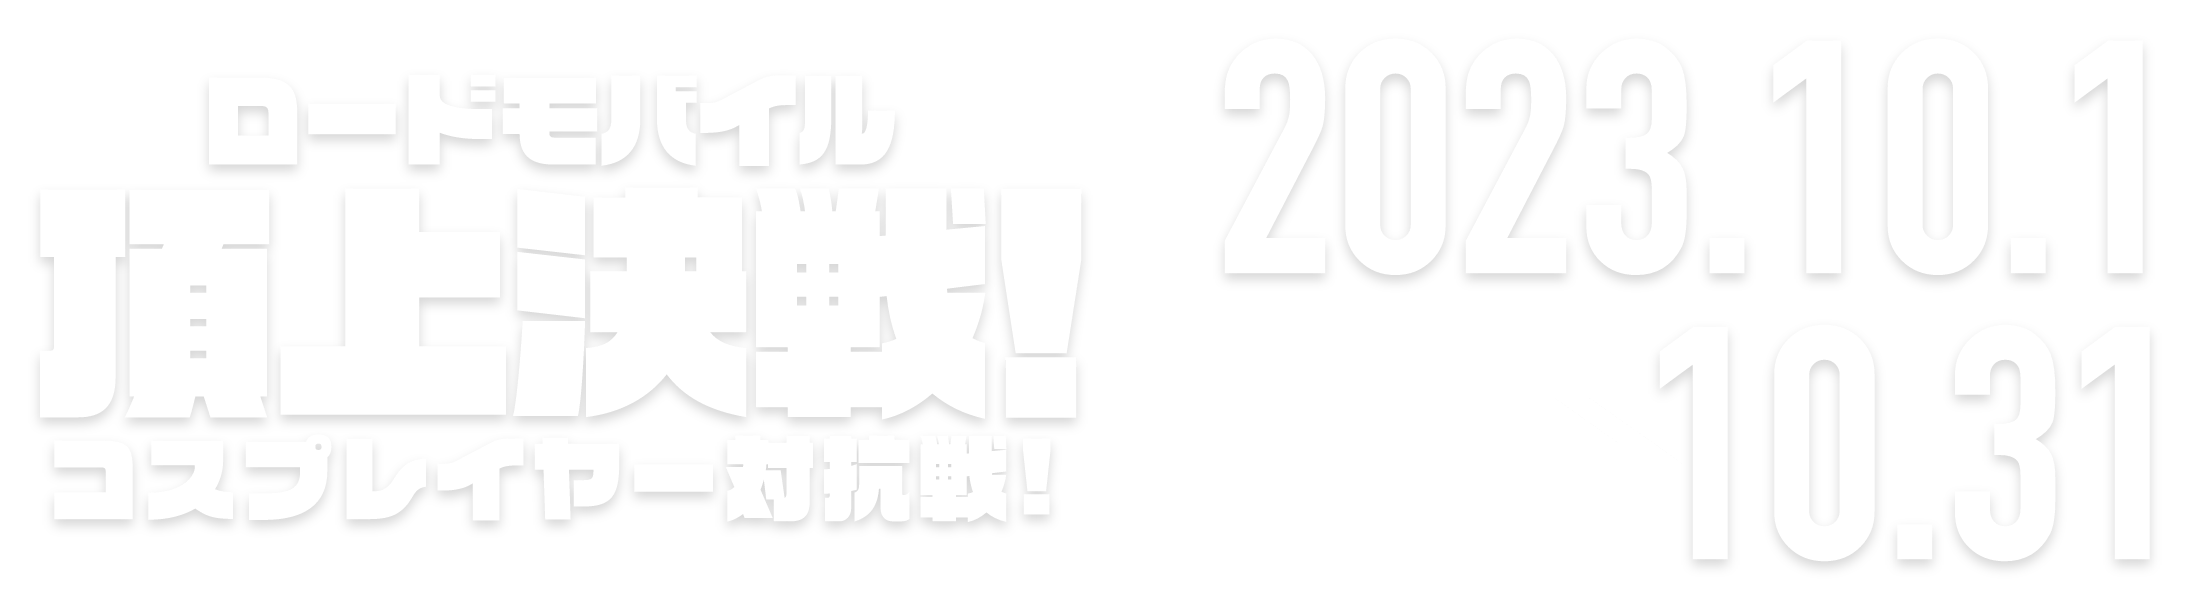 頂上決戦！コスプレイヤー対抗編 2023.1.23 → 2.20